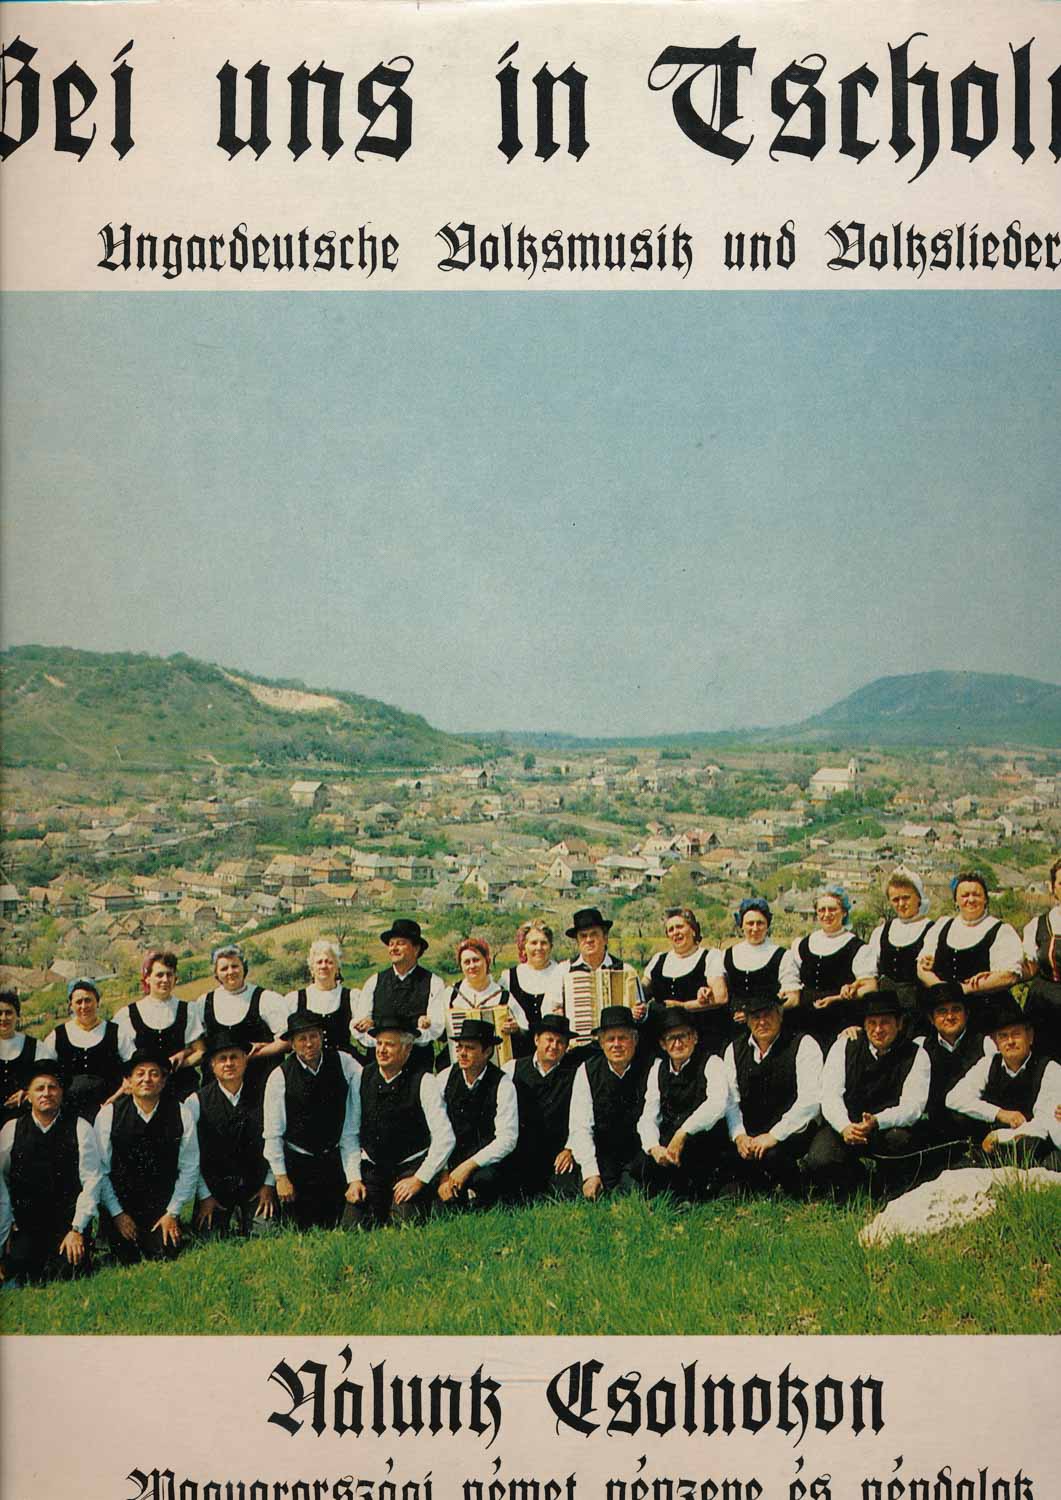 Gemischtchor aus Tscholnok  Bei uns in Tscholnotz. Ungardeutsche Volksmusik und Volkslieder  *LP 12'' (Vinyl)*. 